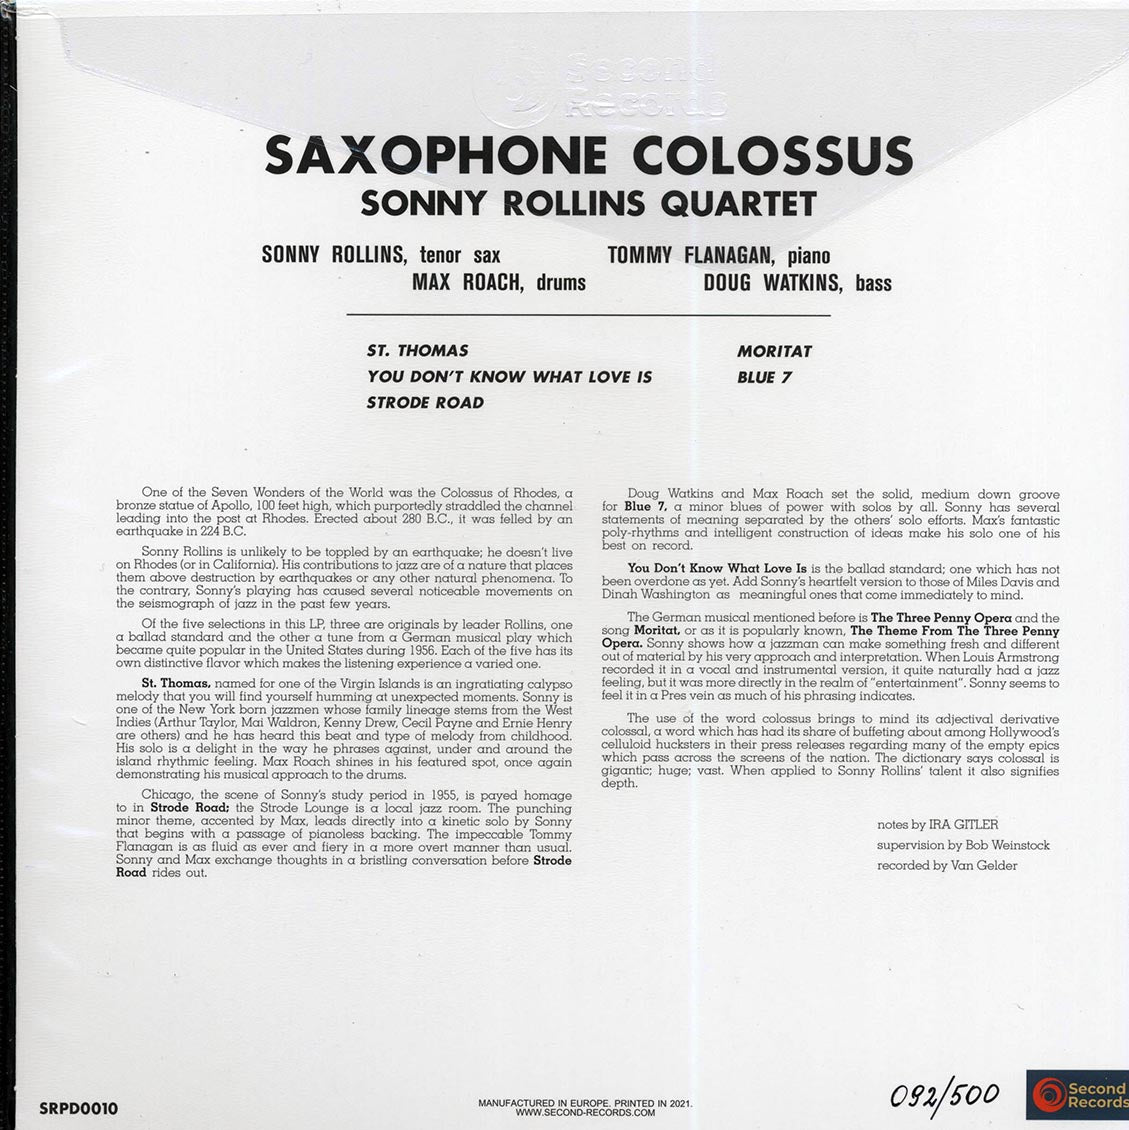 Sonny Rollins - Saxophone Colossus (180g) (blue vinyl) - Vinyl LP, LP